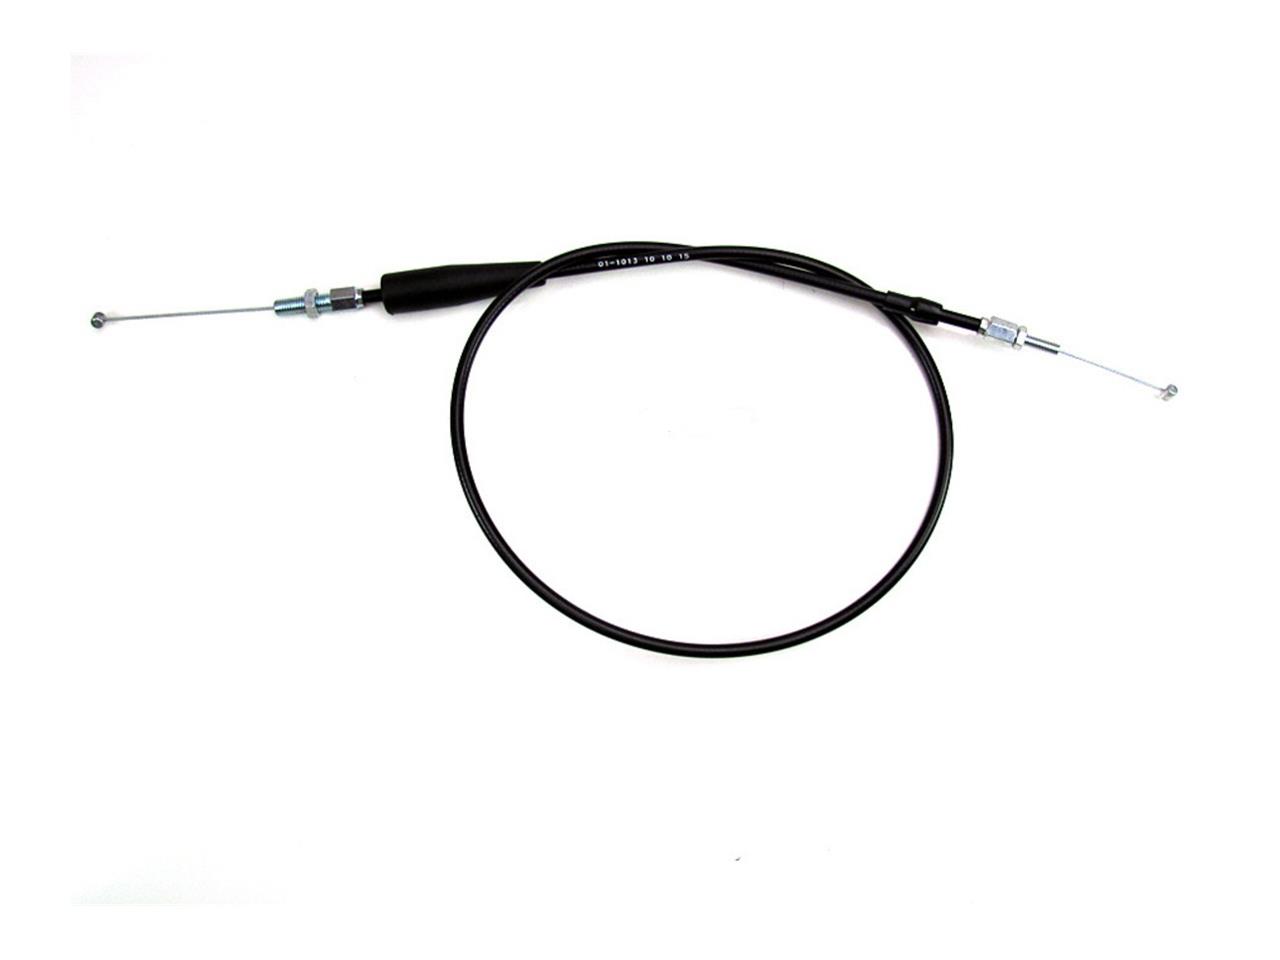 Cable de rechange Motion Pro pour kit poignée